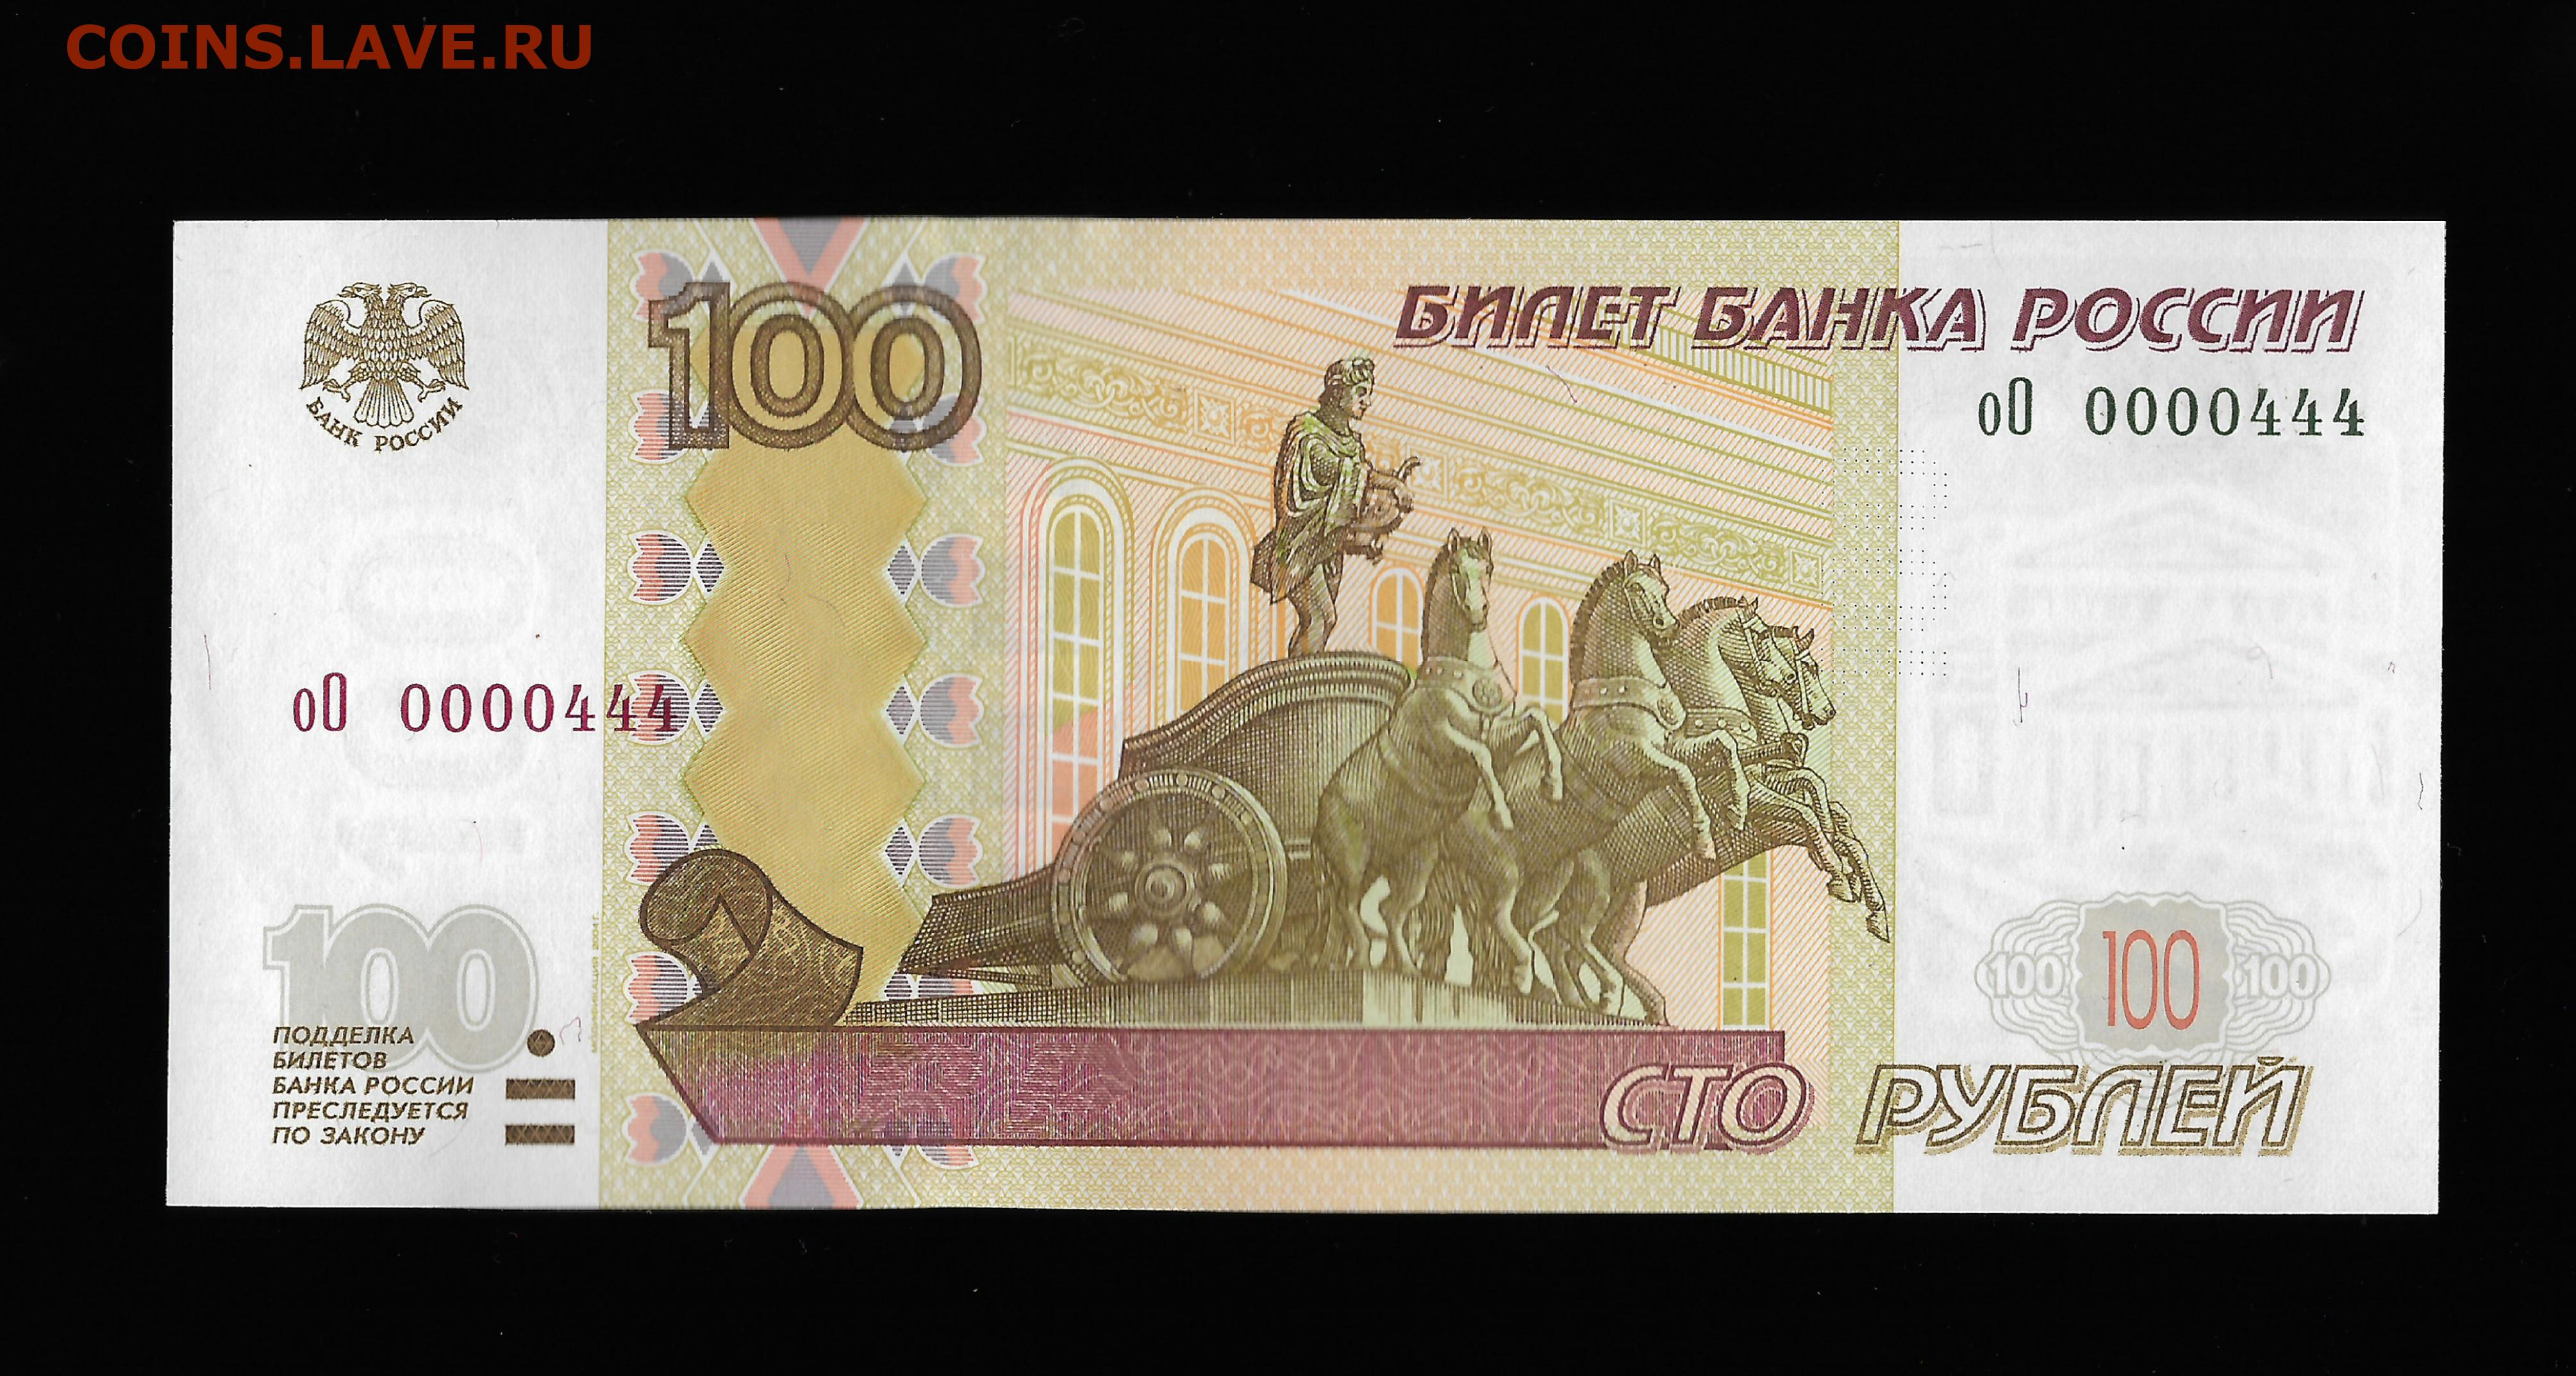 300 рублей в 60 годы. Купюра 100 рублей 1997. Купюра 4 рубля. 4 Тысячи рублей банкнота. Купюры с интересным дизайном.